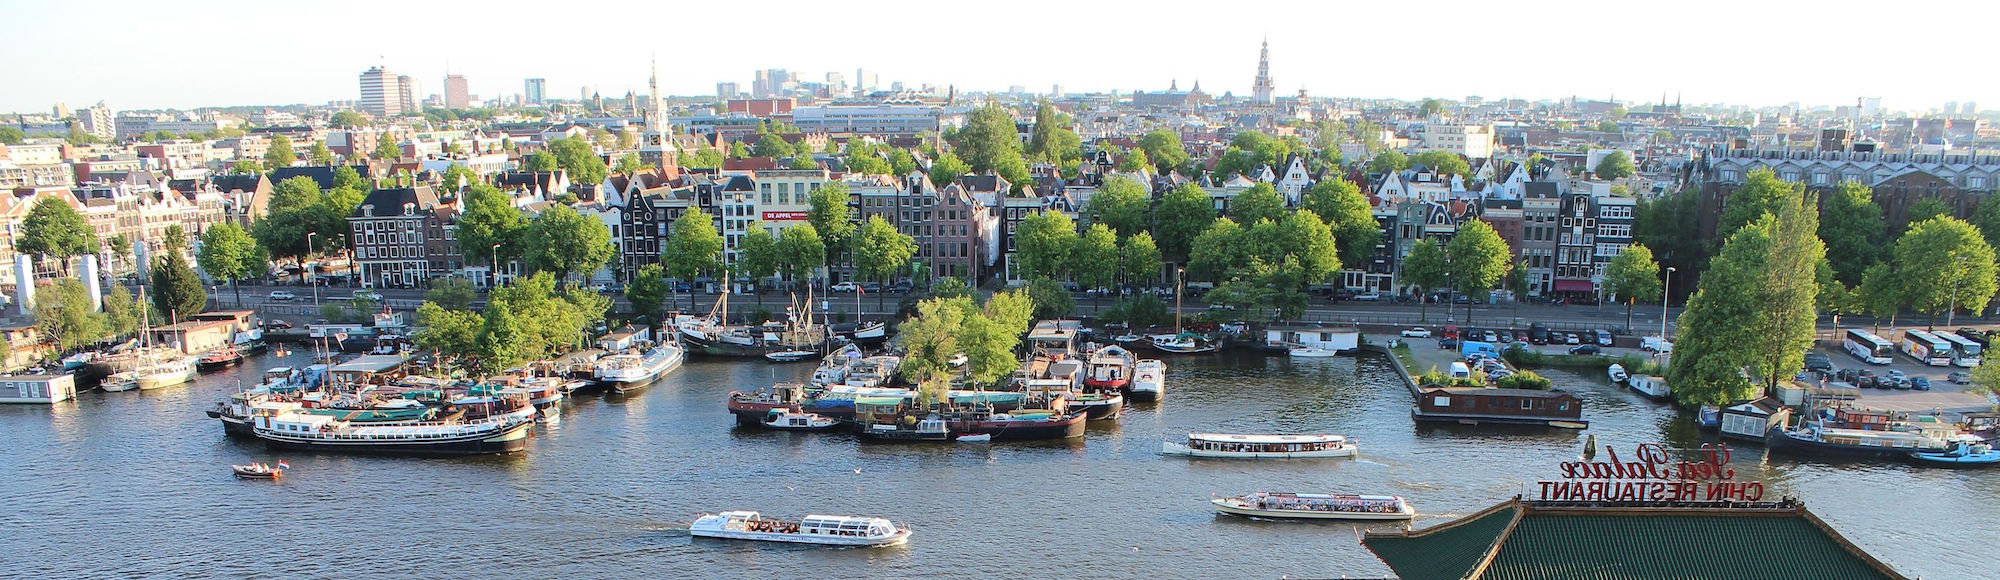 Amsterdam - panorama